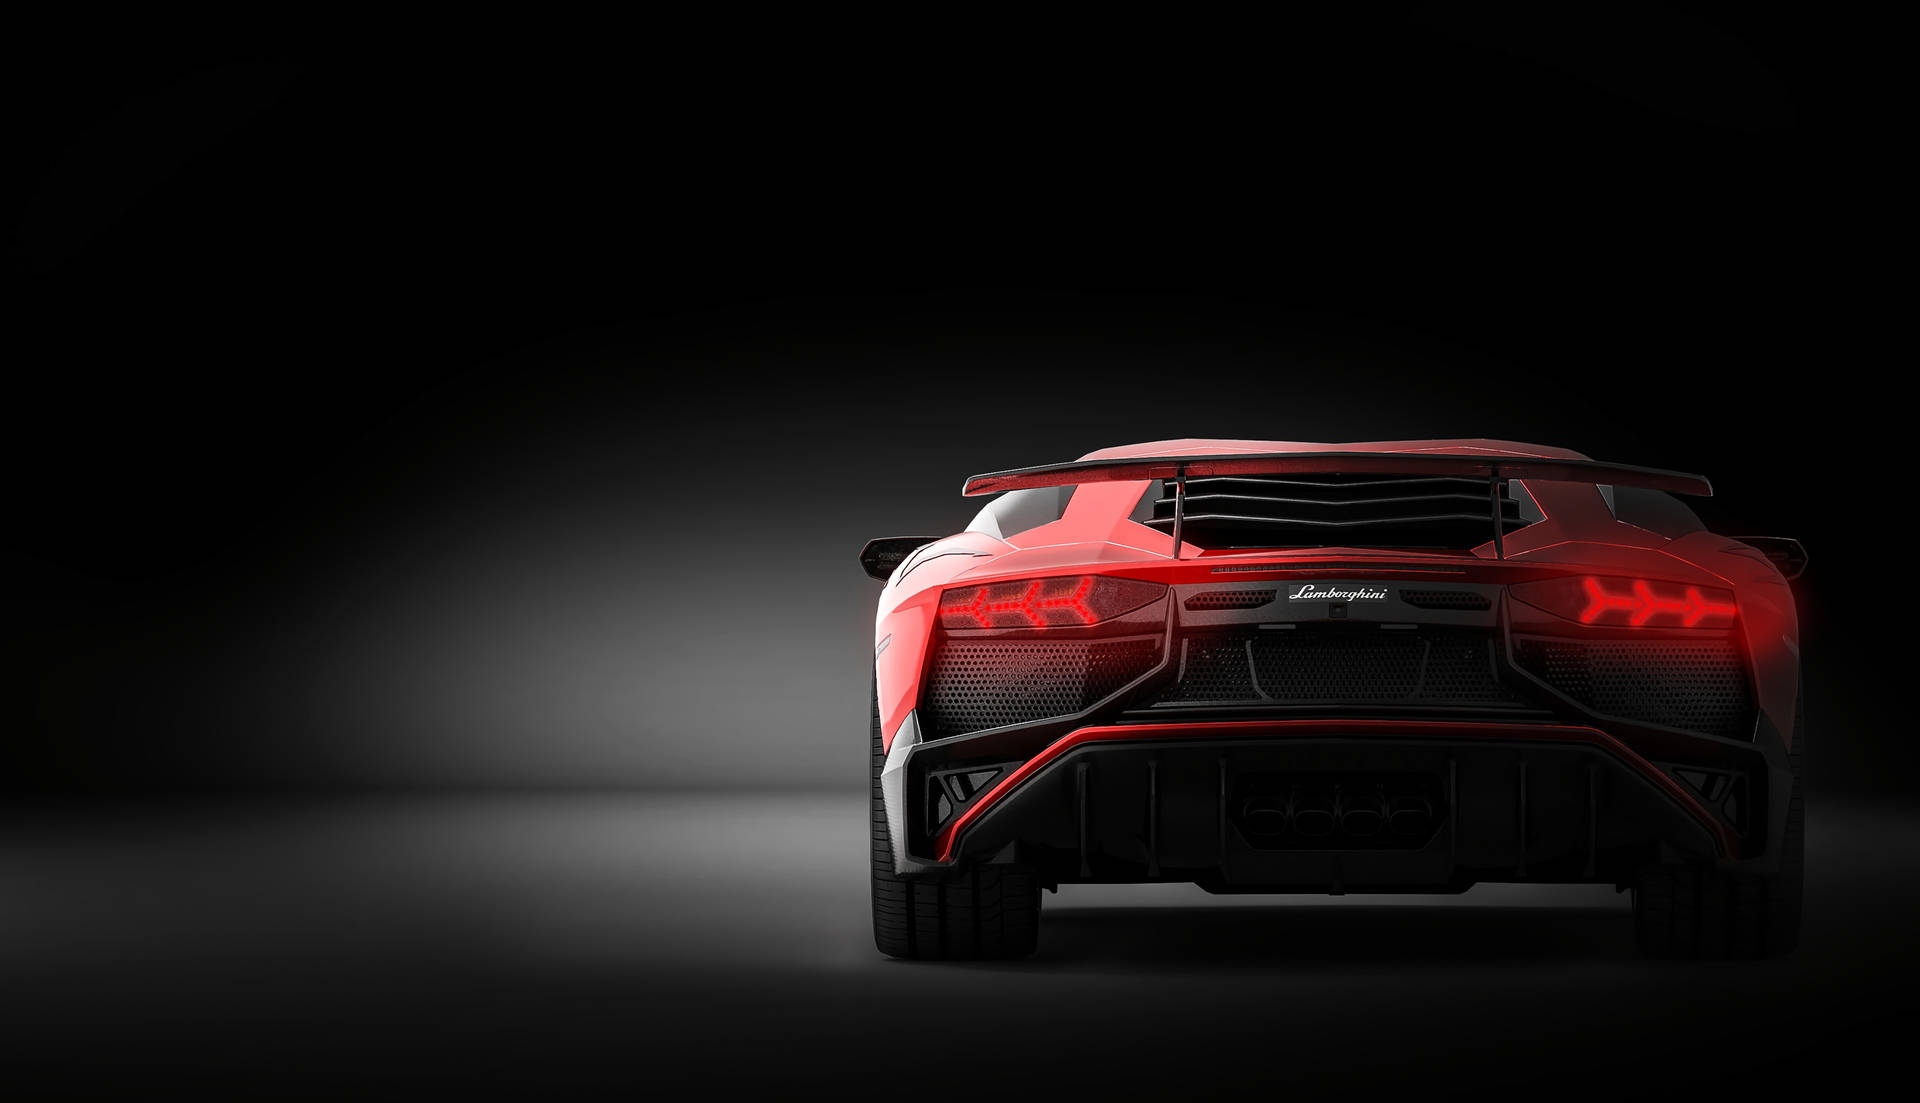 Red Lamborghini Aventador Lp 700-4 Background